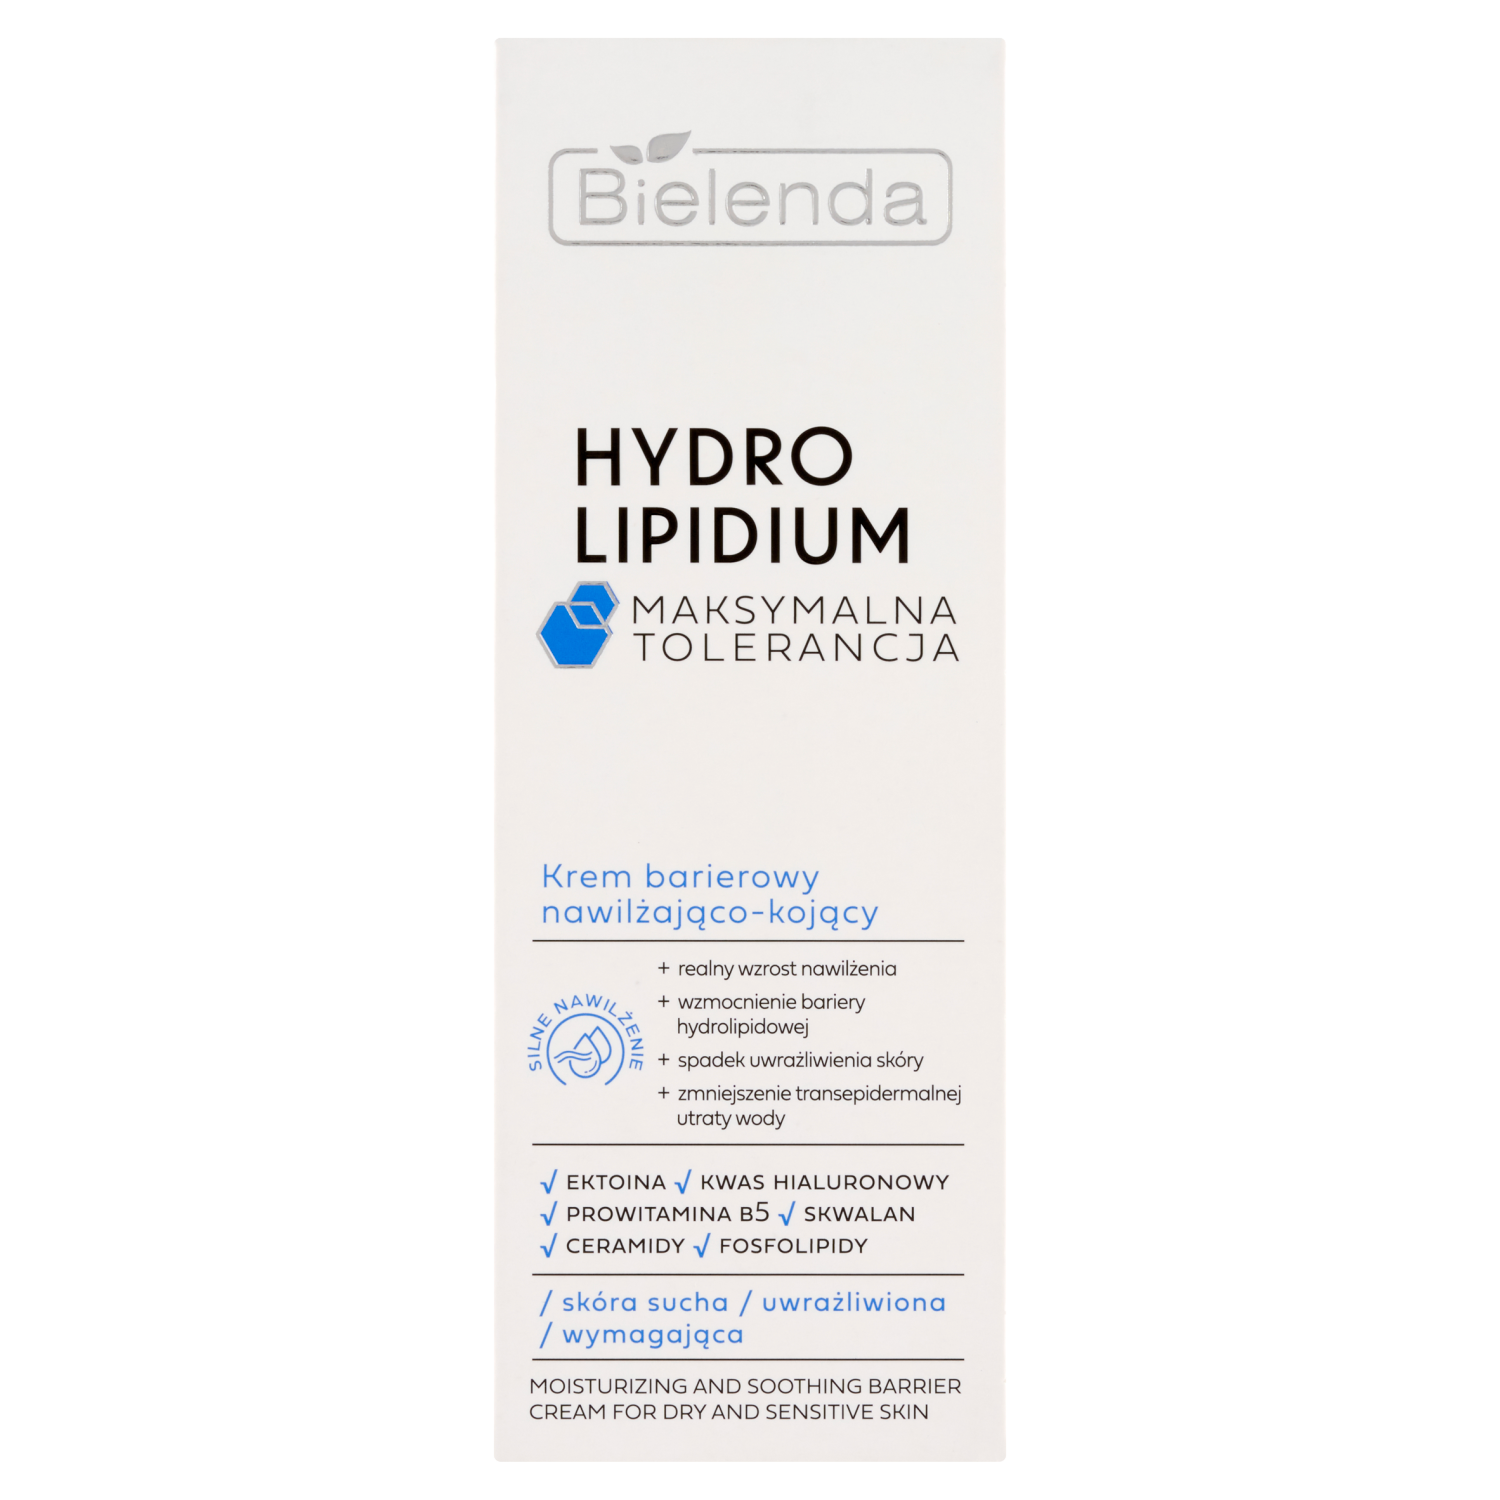 Увлажняющий и успокаивающий защитный крем для лица Bielenda Hydro Lipidium, 50 мл увлажняющий и защитный барьерный крем с spf50 для лица bielenda hydro lipidium 30 мл